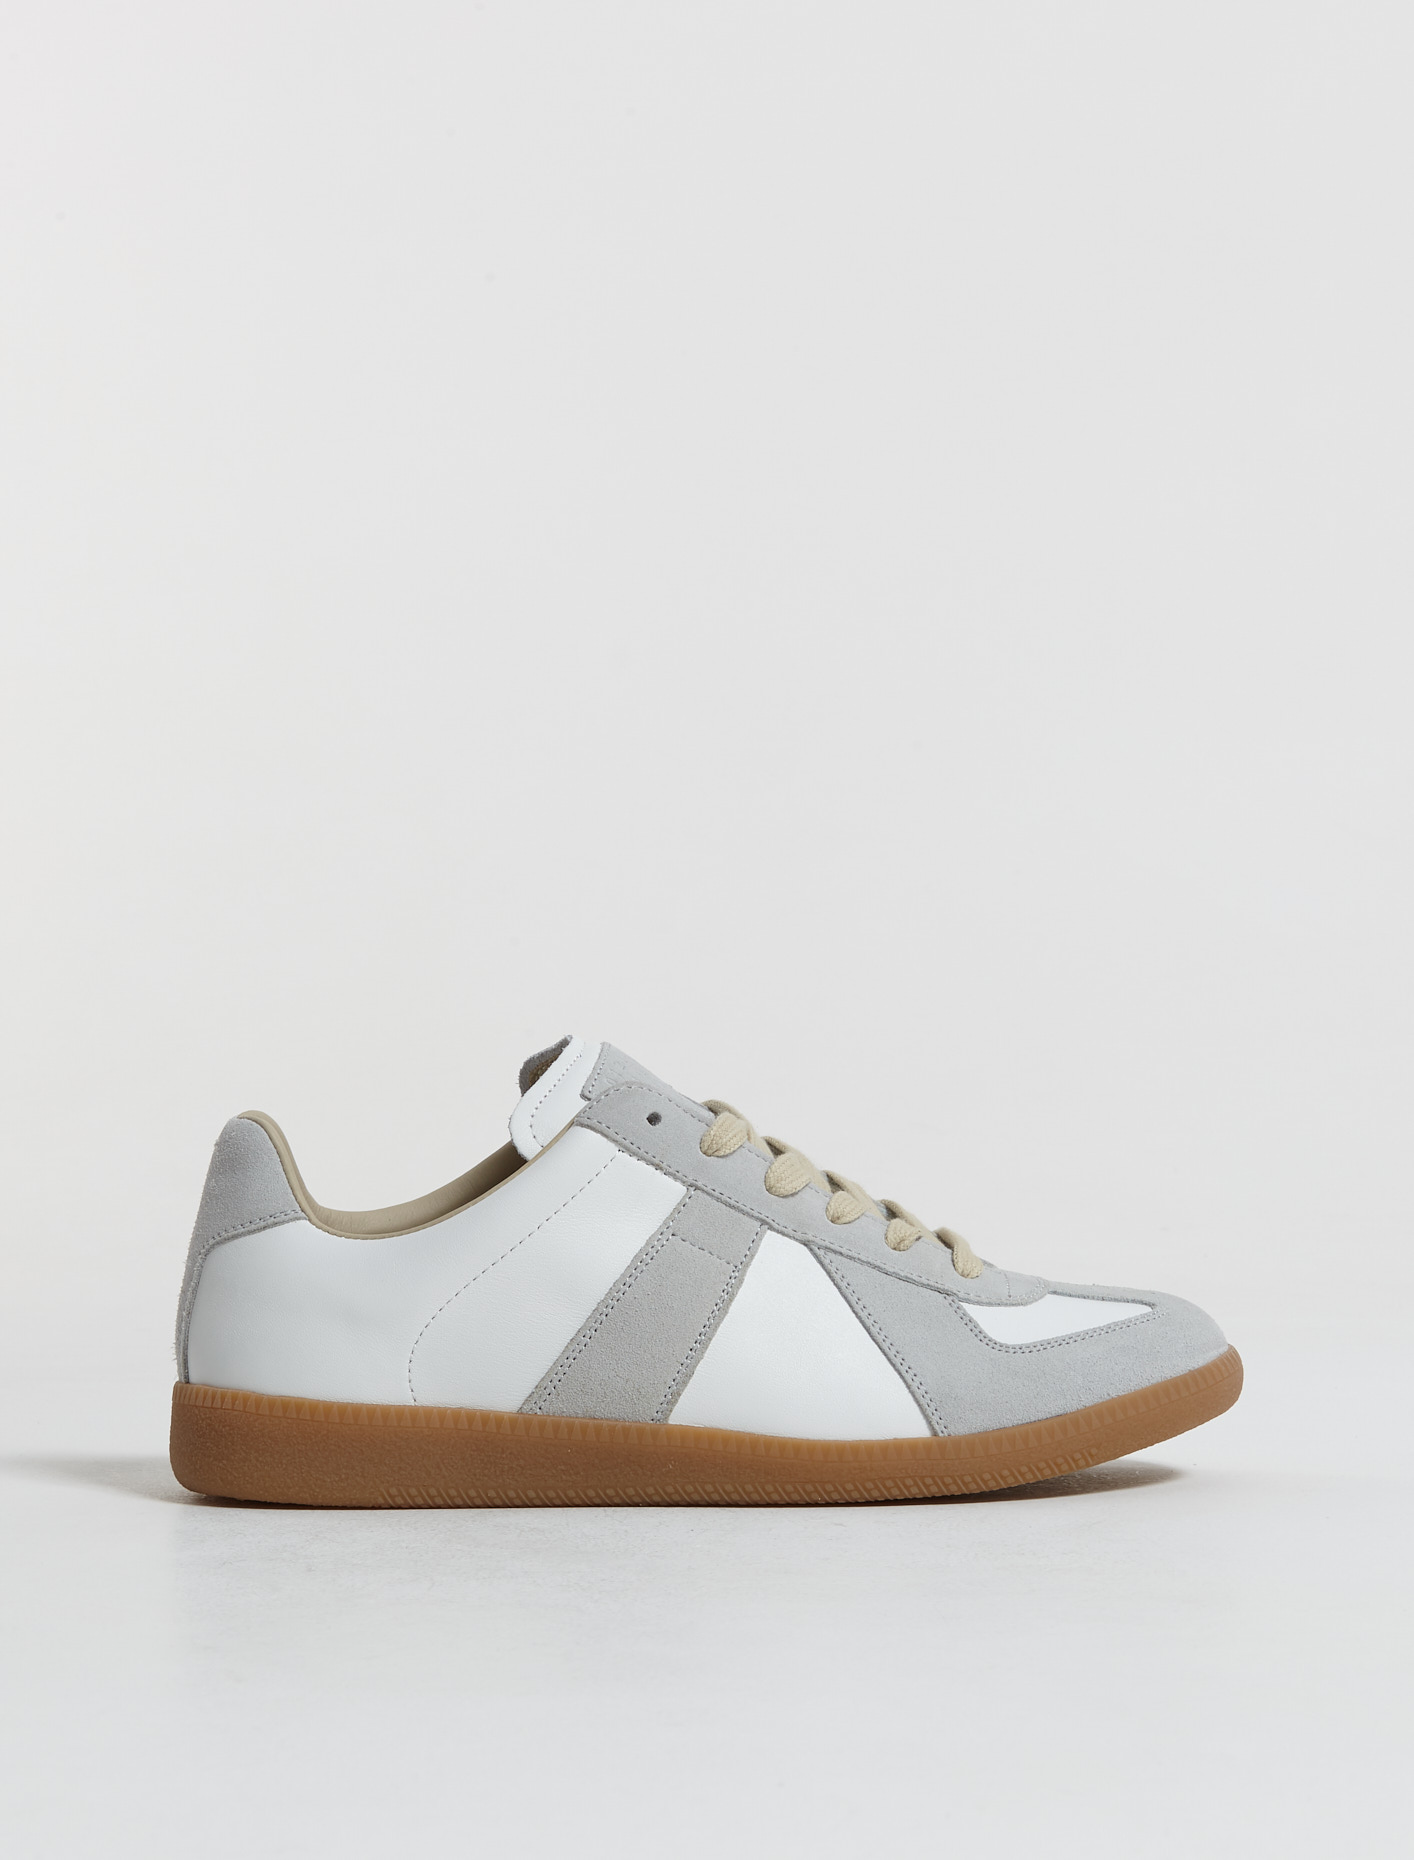 Maison Margiela Replica Sneakers in Off White | Voo Store Berlin ...